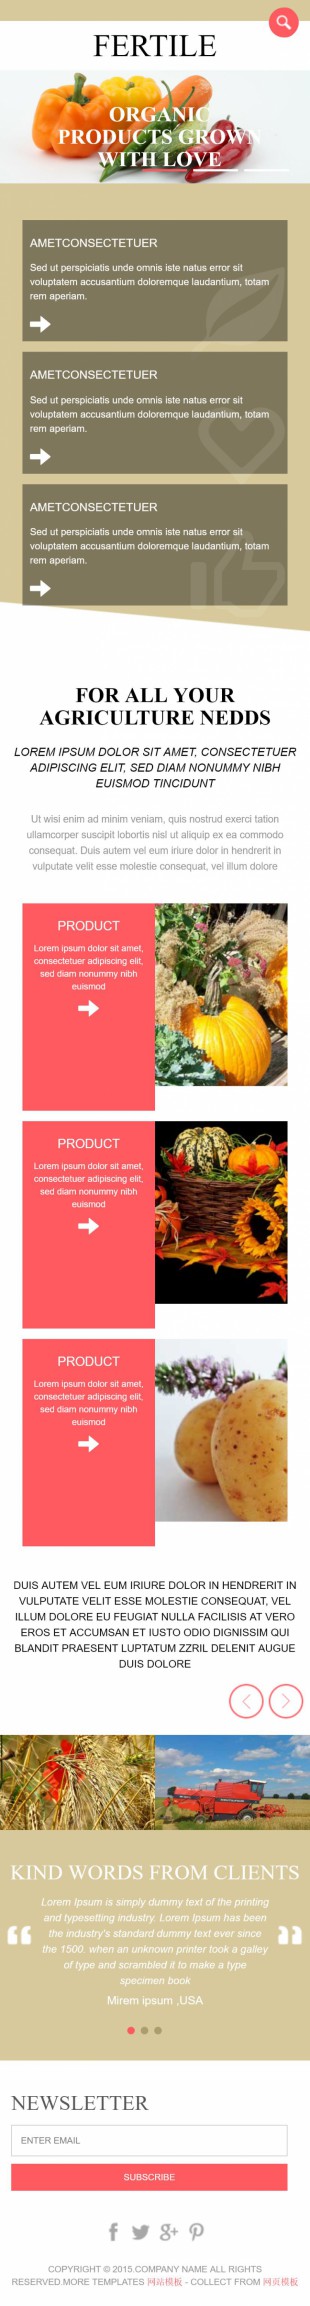 橙色大气漂亮的果农蔬菜基地公司英文网站建设模板手机图片